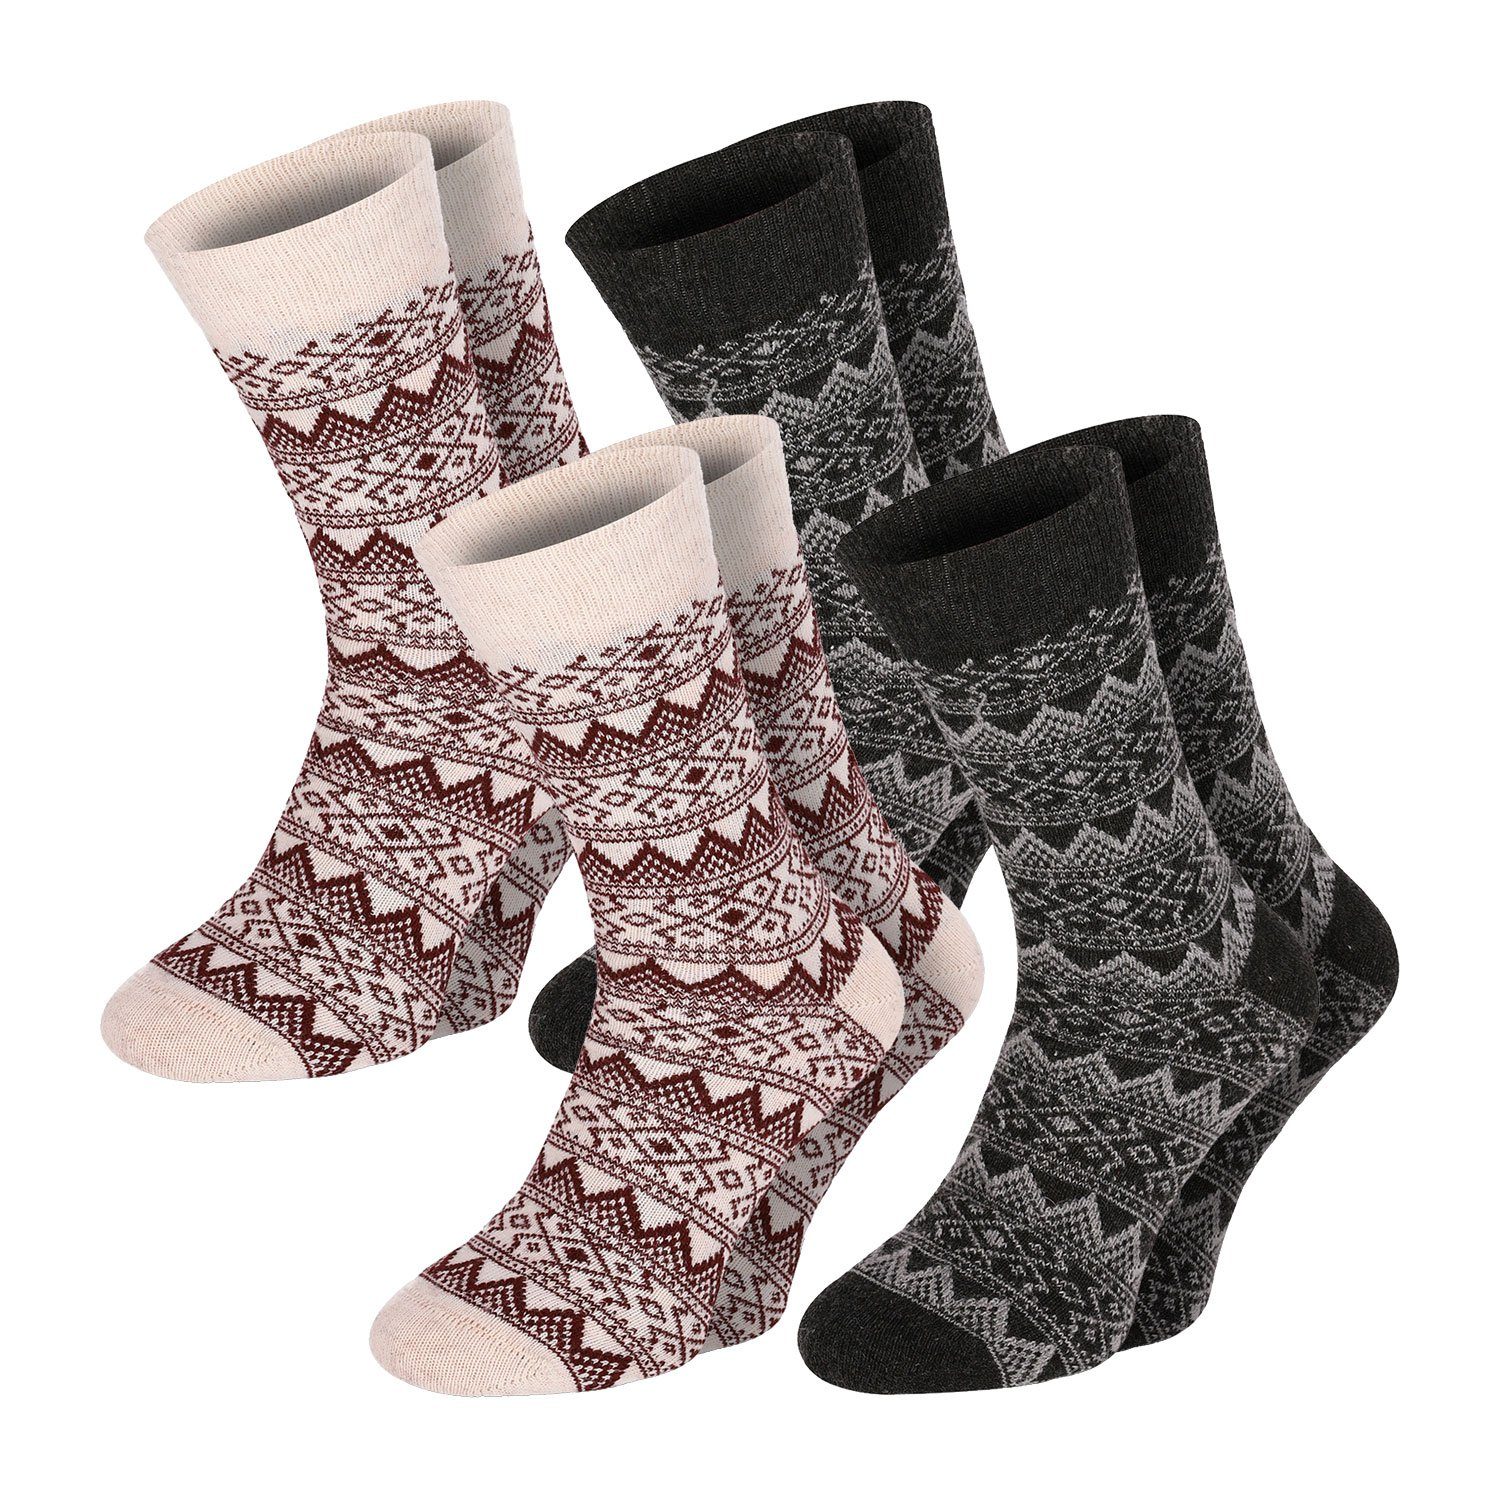 Chili Lifestyle Strümpfe Herren farbig Classic 4 Schaf Paar Socken Winter Warm Wolle Damen Wool